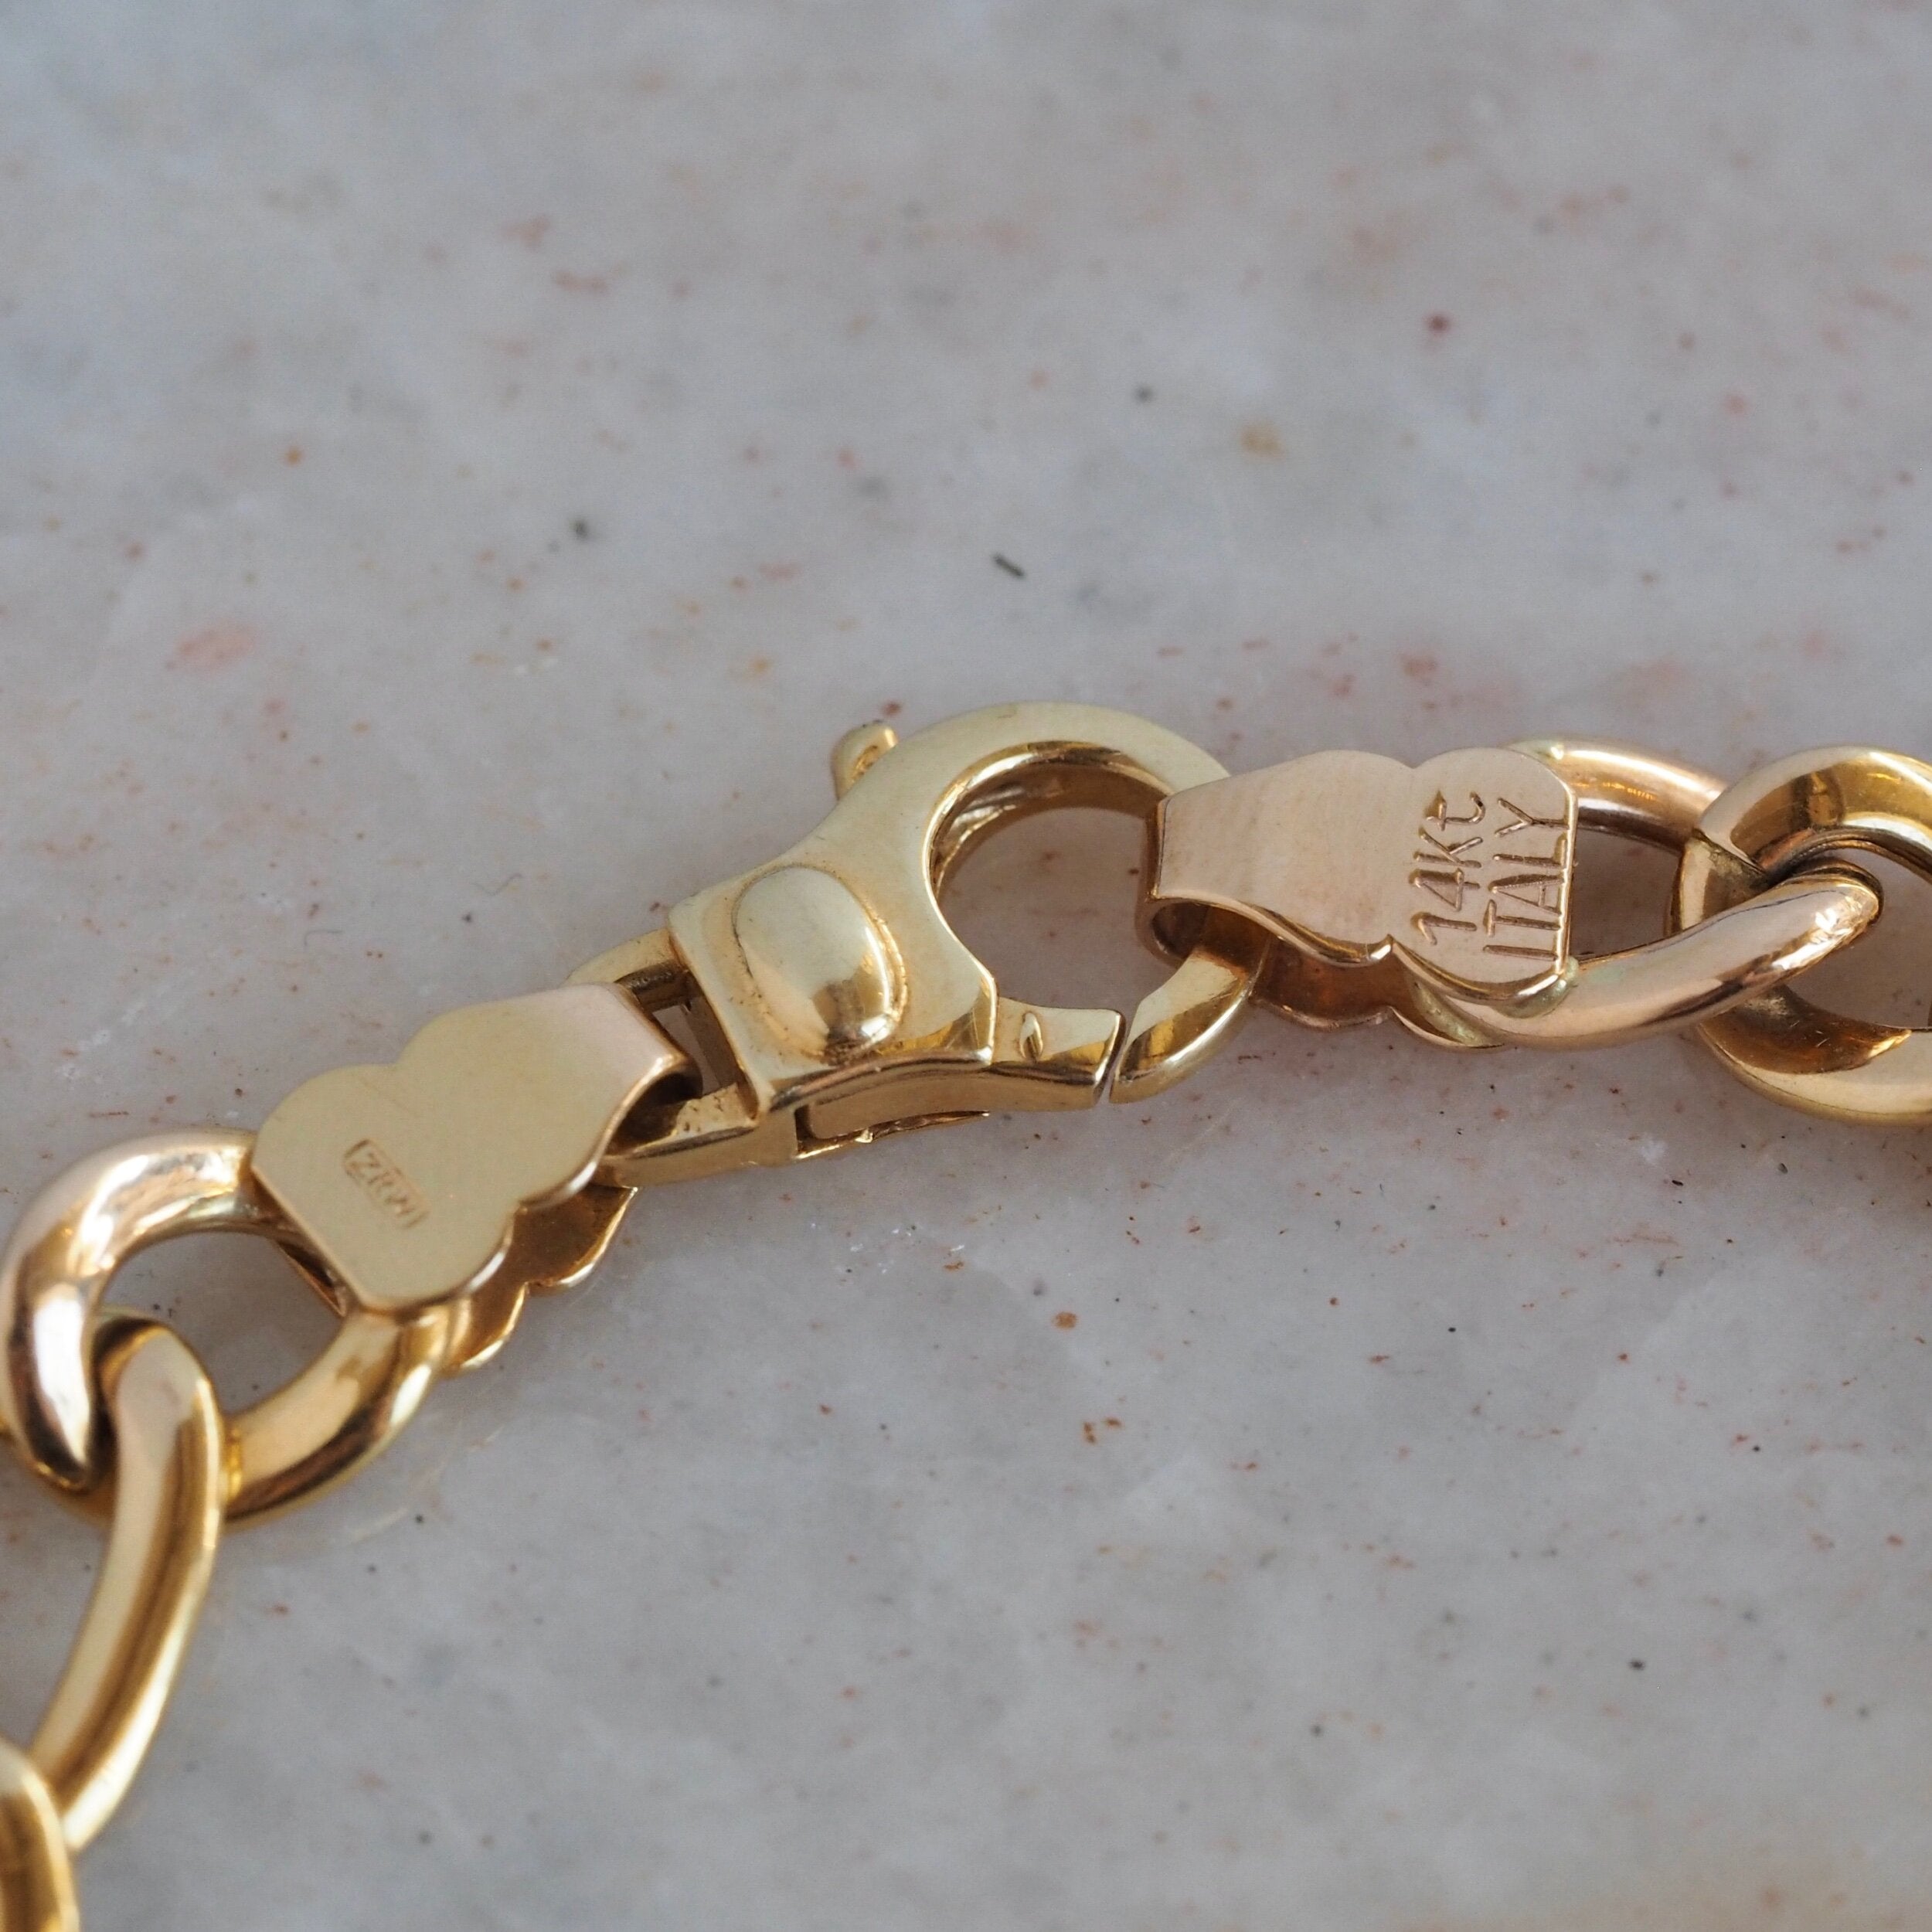 Vintage 14k Gold Italian Figaro Curb Link Bracelet